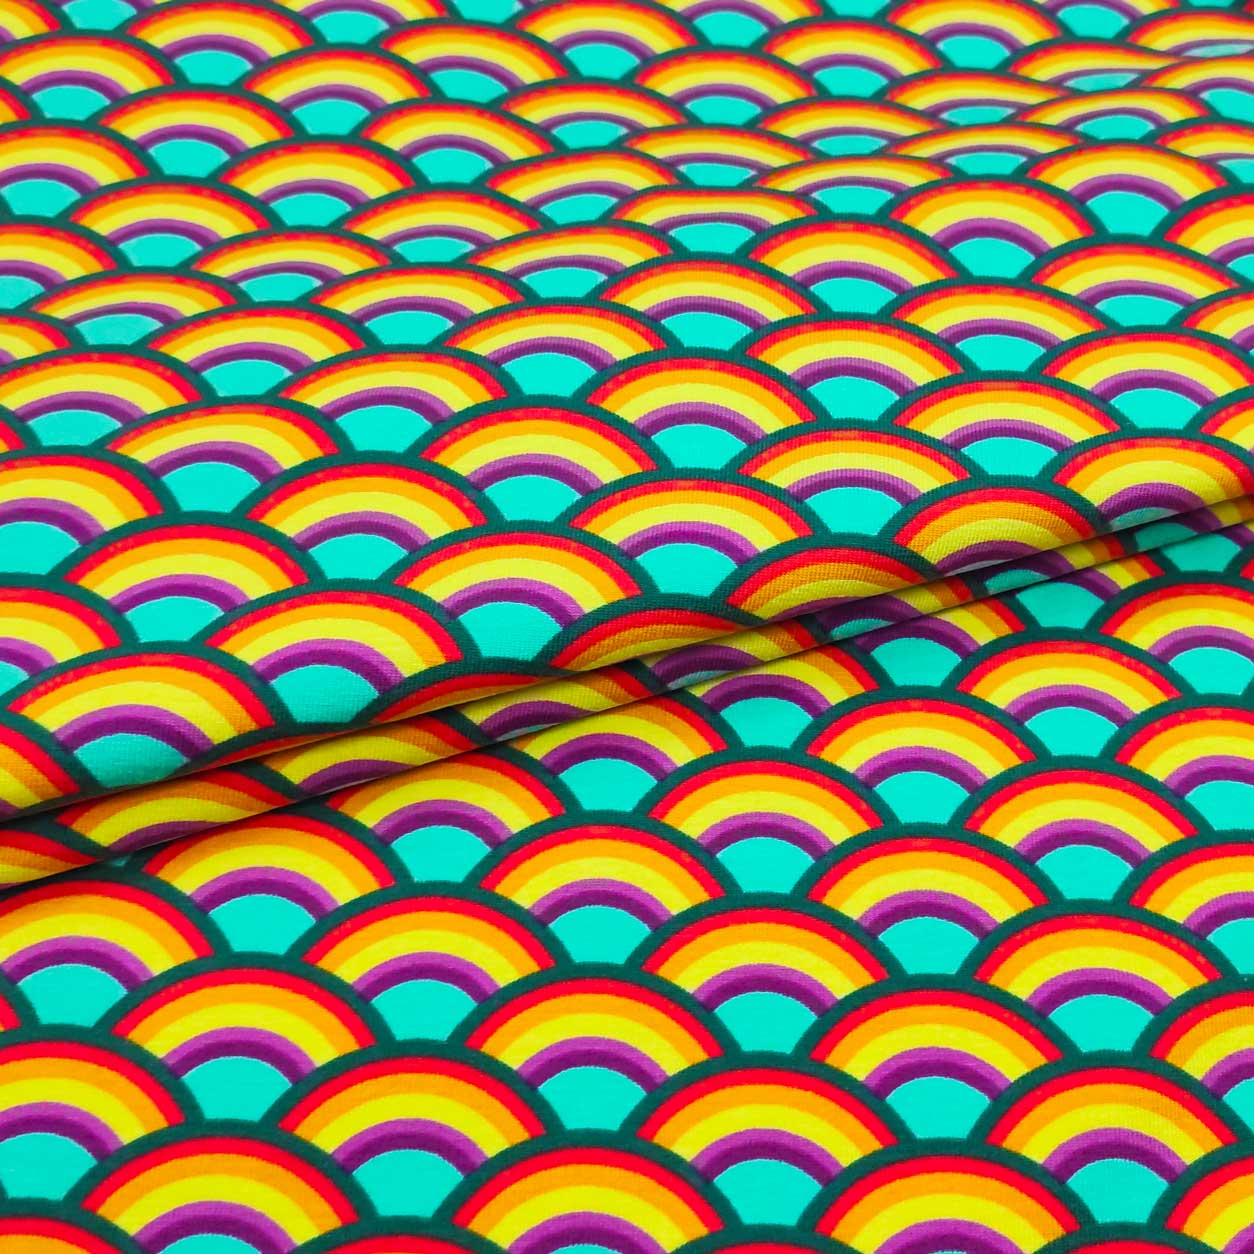 maglina in cotone arcobaleni sfondo turchese